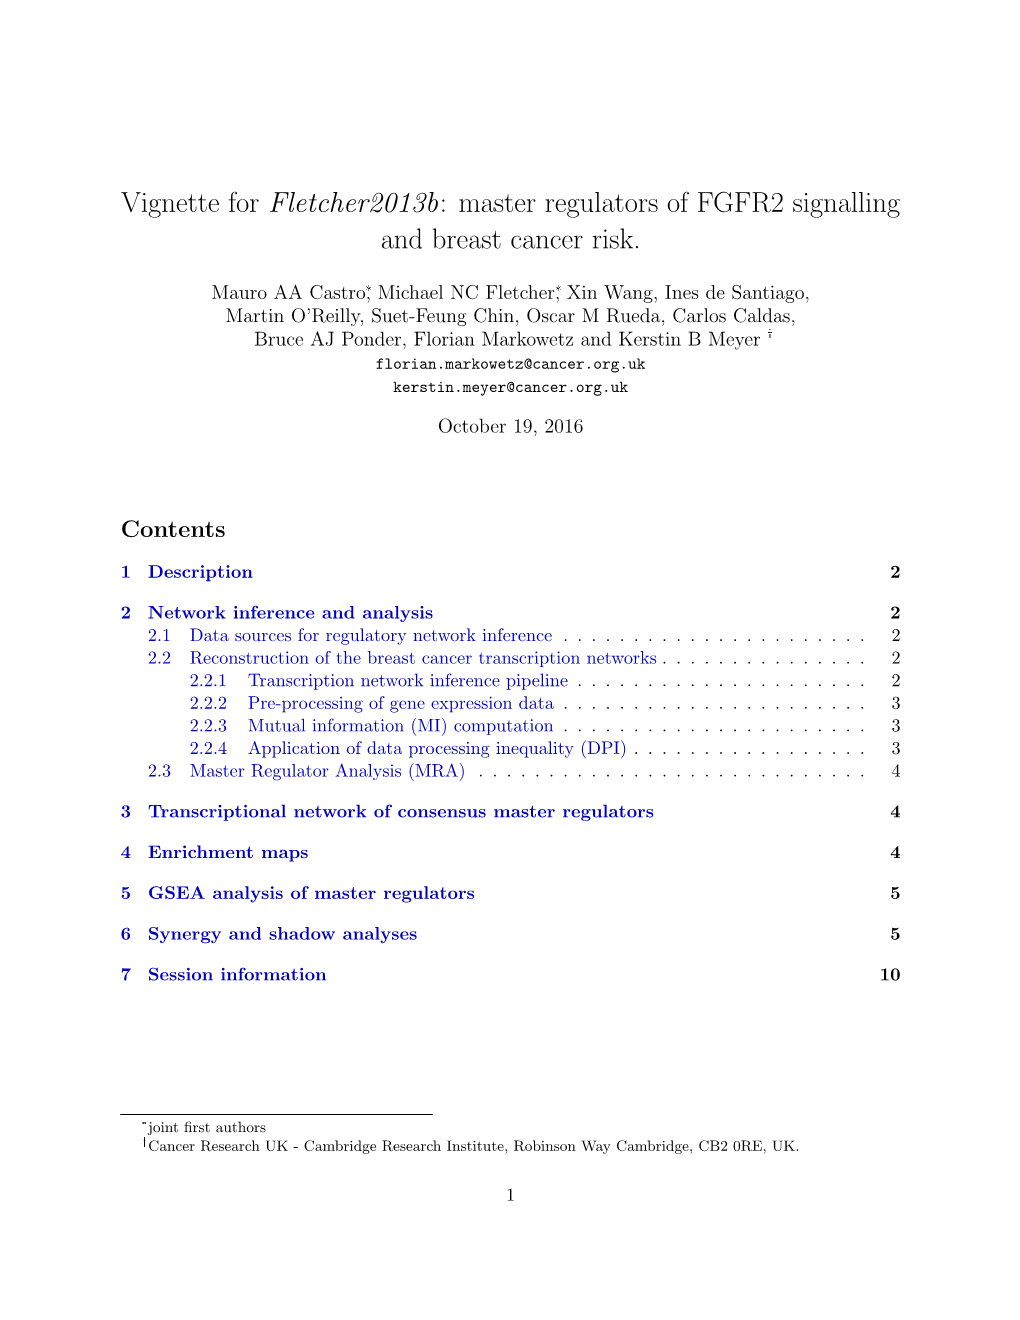 Vignette for Fletcher2013b: Master Regulators of FGFR2 Signalling and Breast Cancer Risk